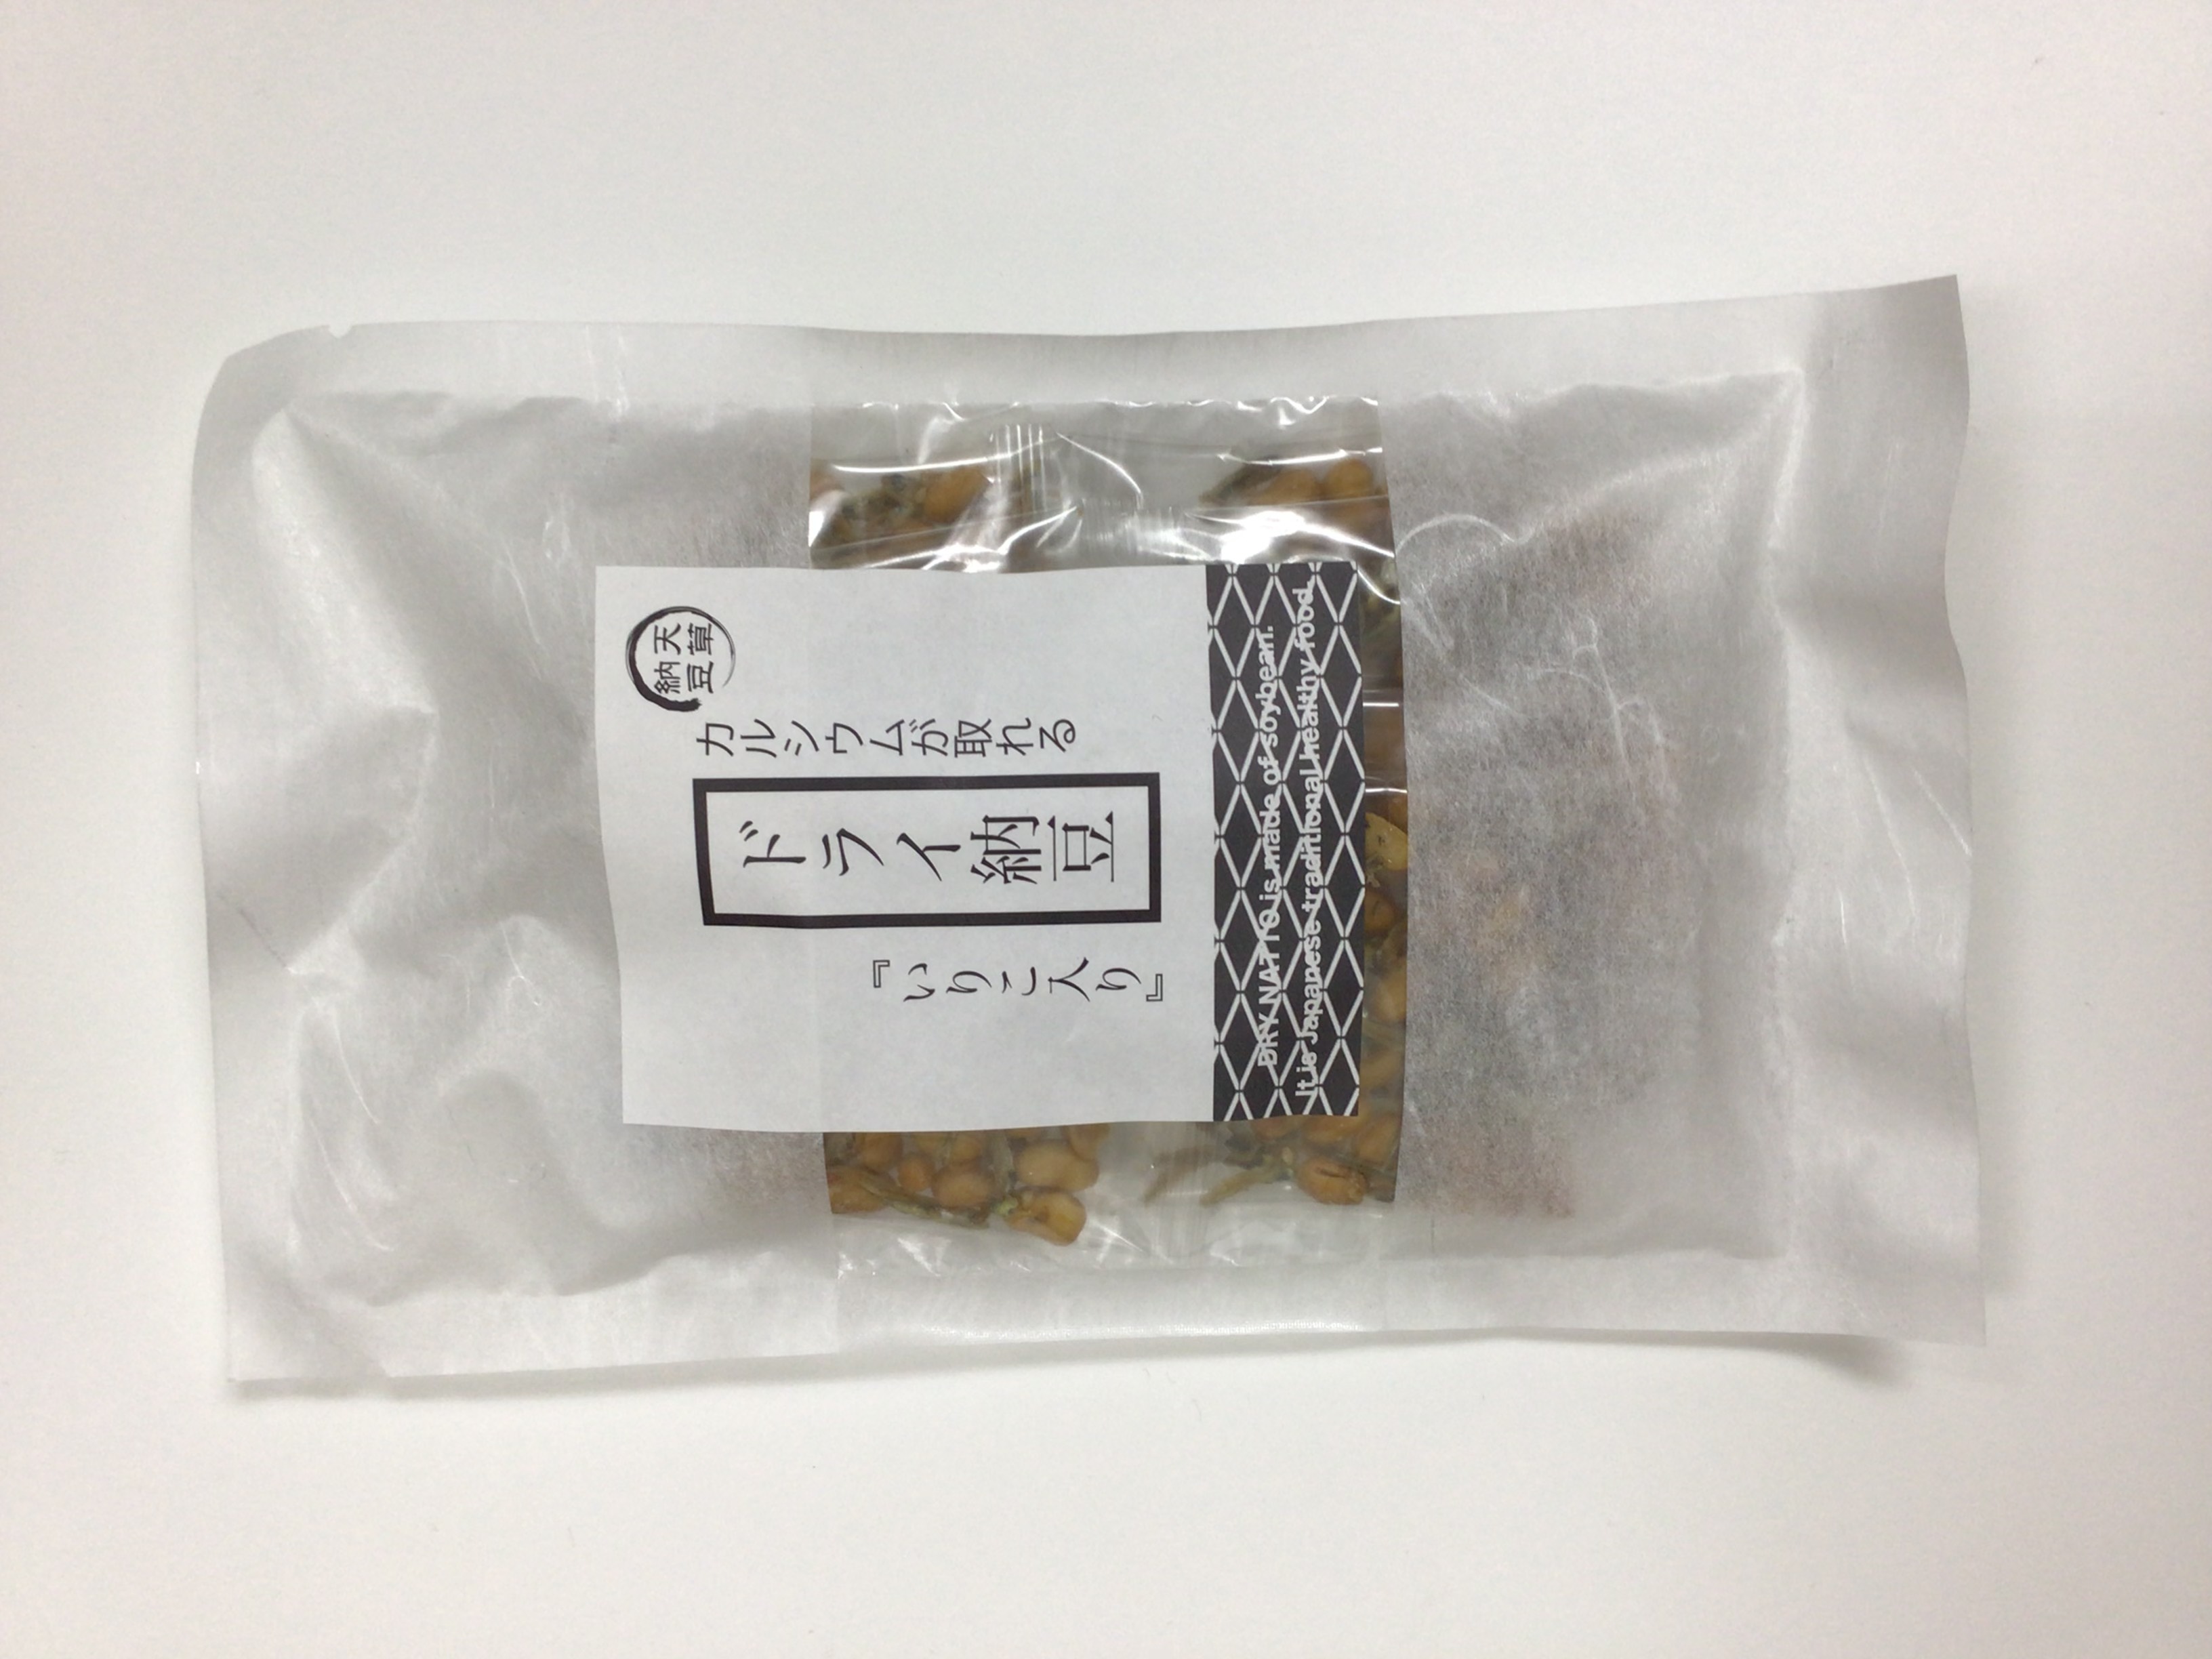 dry natto Iriko 1 set contains 30 bags